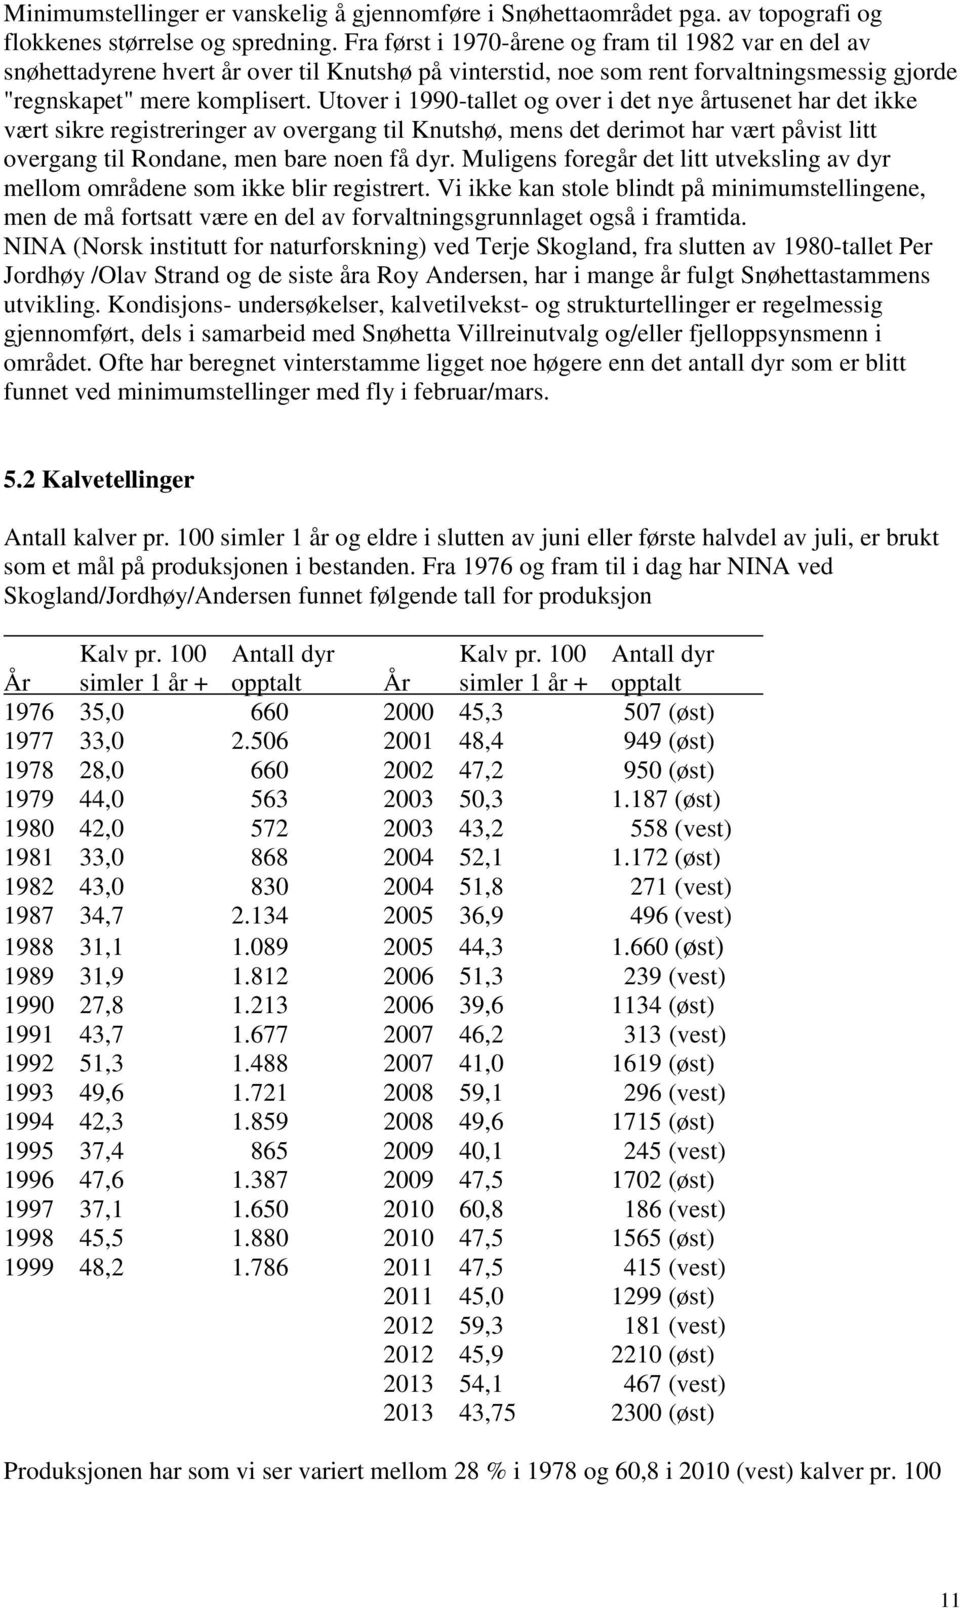 Utover i 1990-tallet og over i det nye årtusenet har det ikke vært sikre registreringer av overgang til Knutshø, mens det derimot har vært påvist litt overgang til Rondane, men bare noen få dyr.